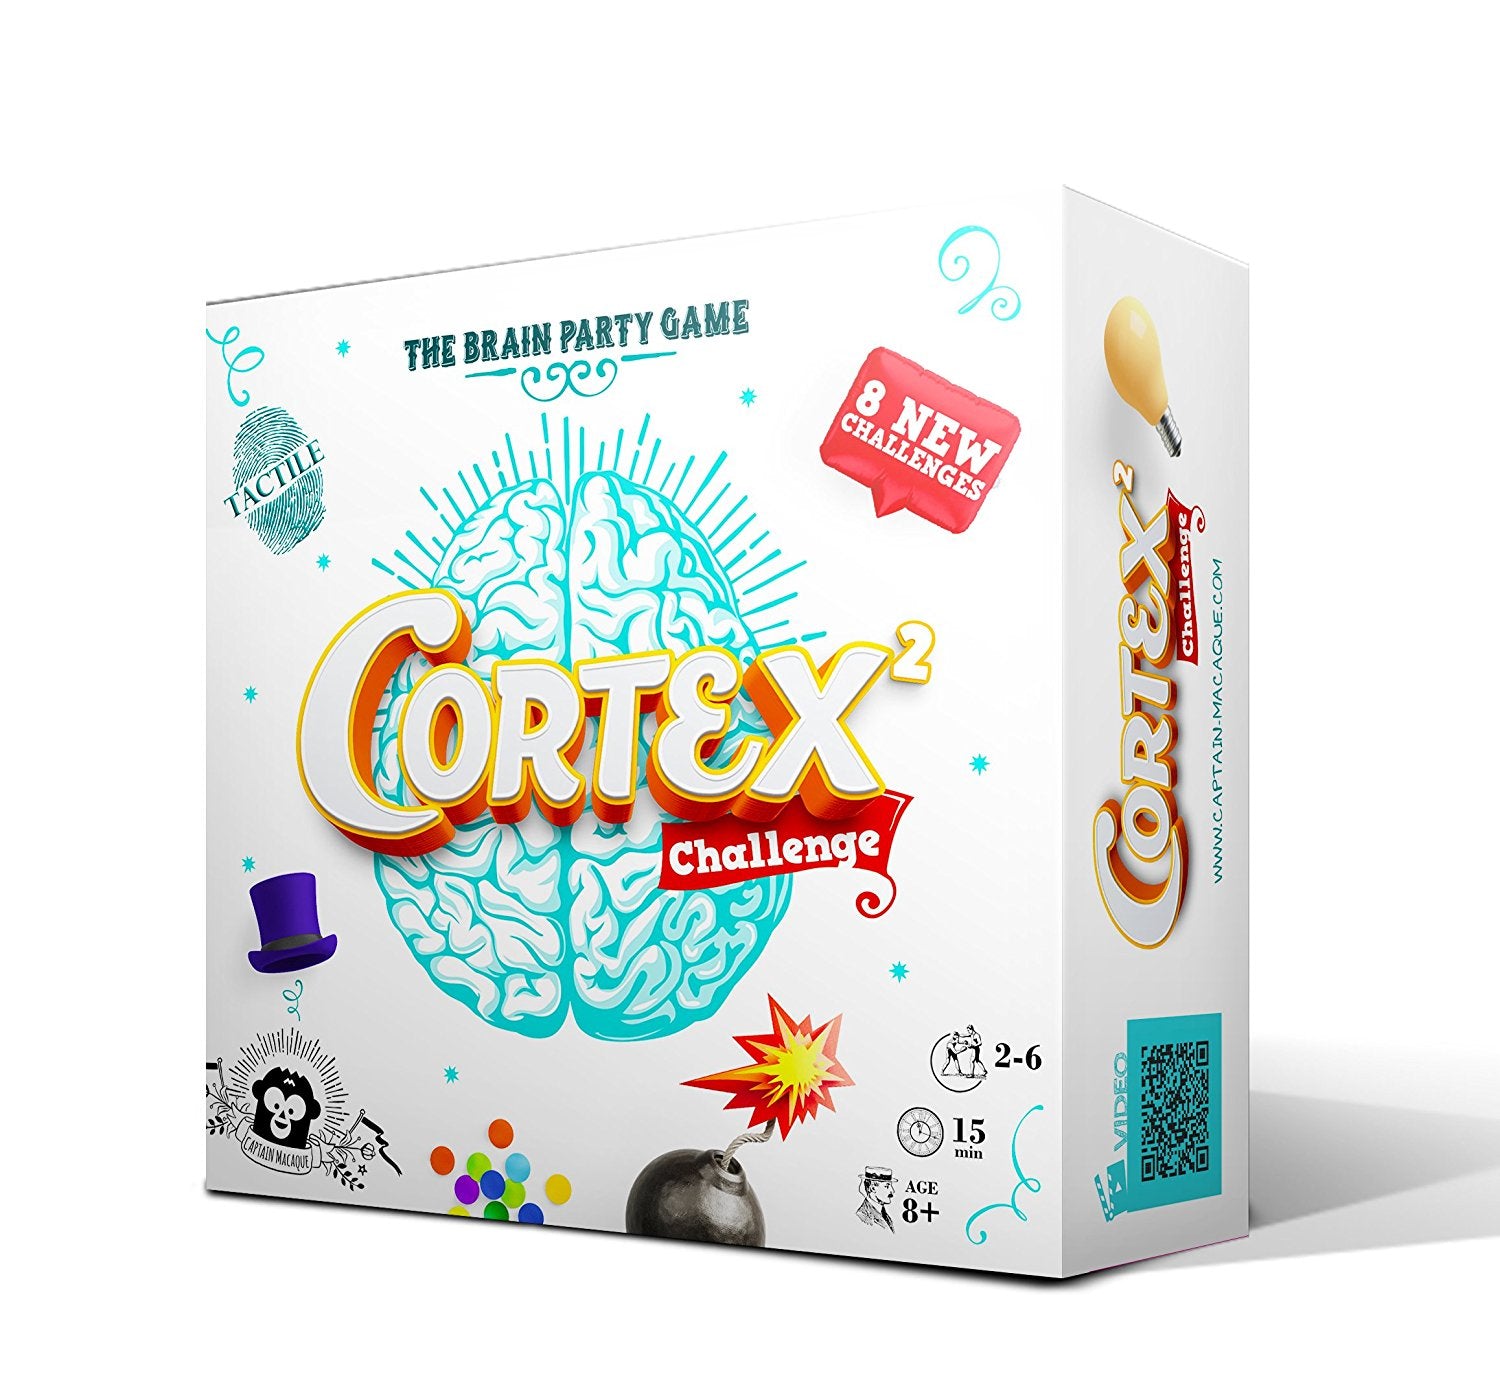 სამაგიდო თამაში კორტექს გამოწვევა 2 (Cortex Challenge 2) სამაგიდო თამაში